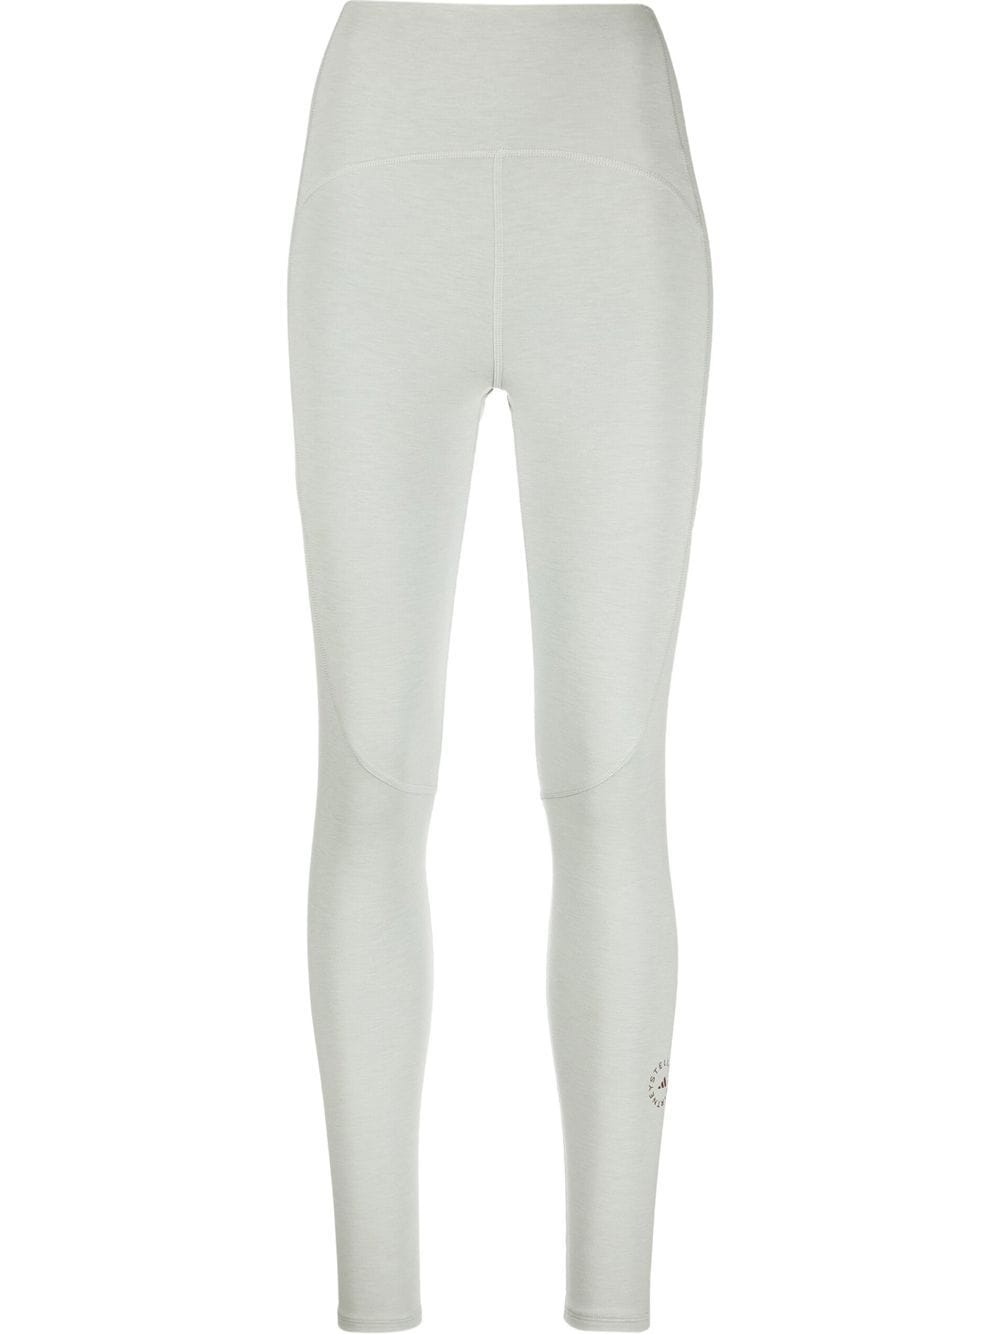 adidas by Stella McCartney 7/8 yoga leggings - Grey - Modafirma